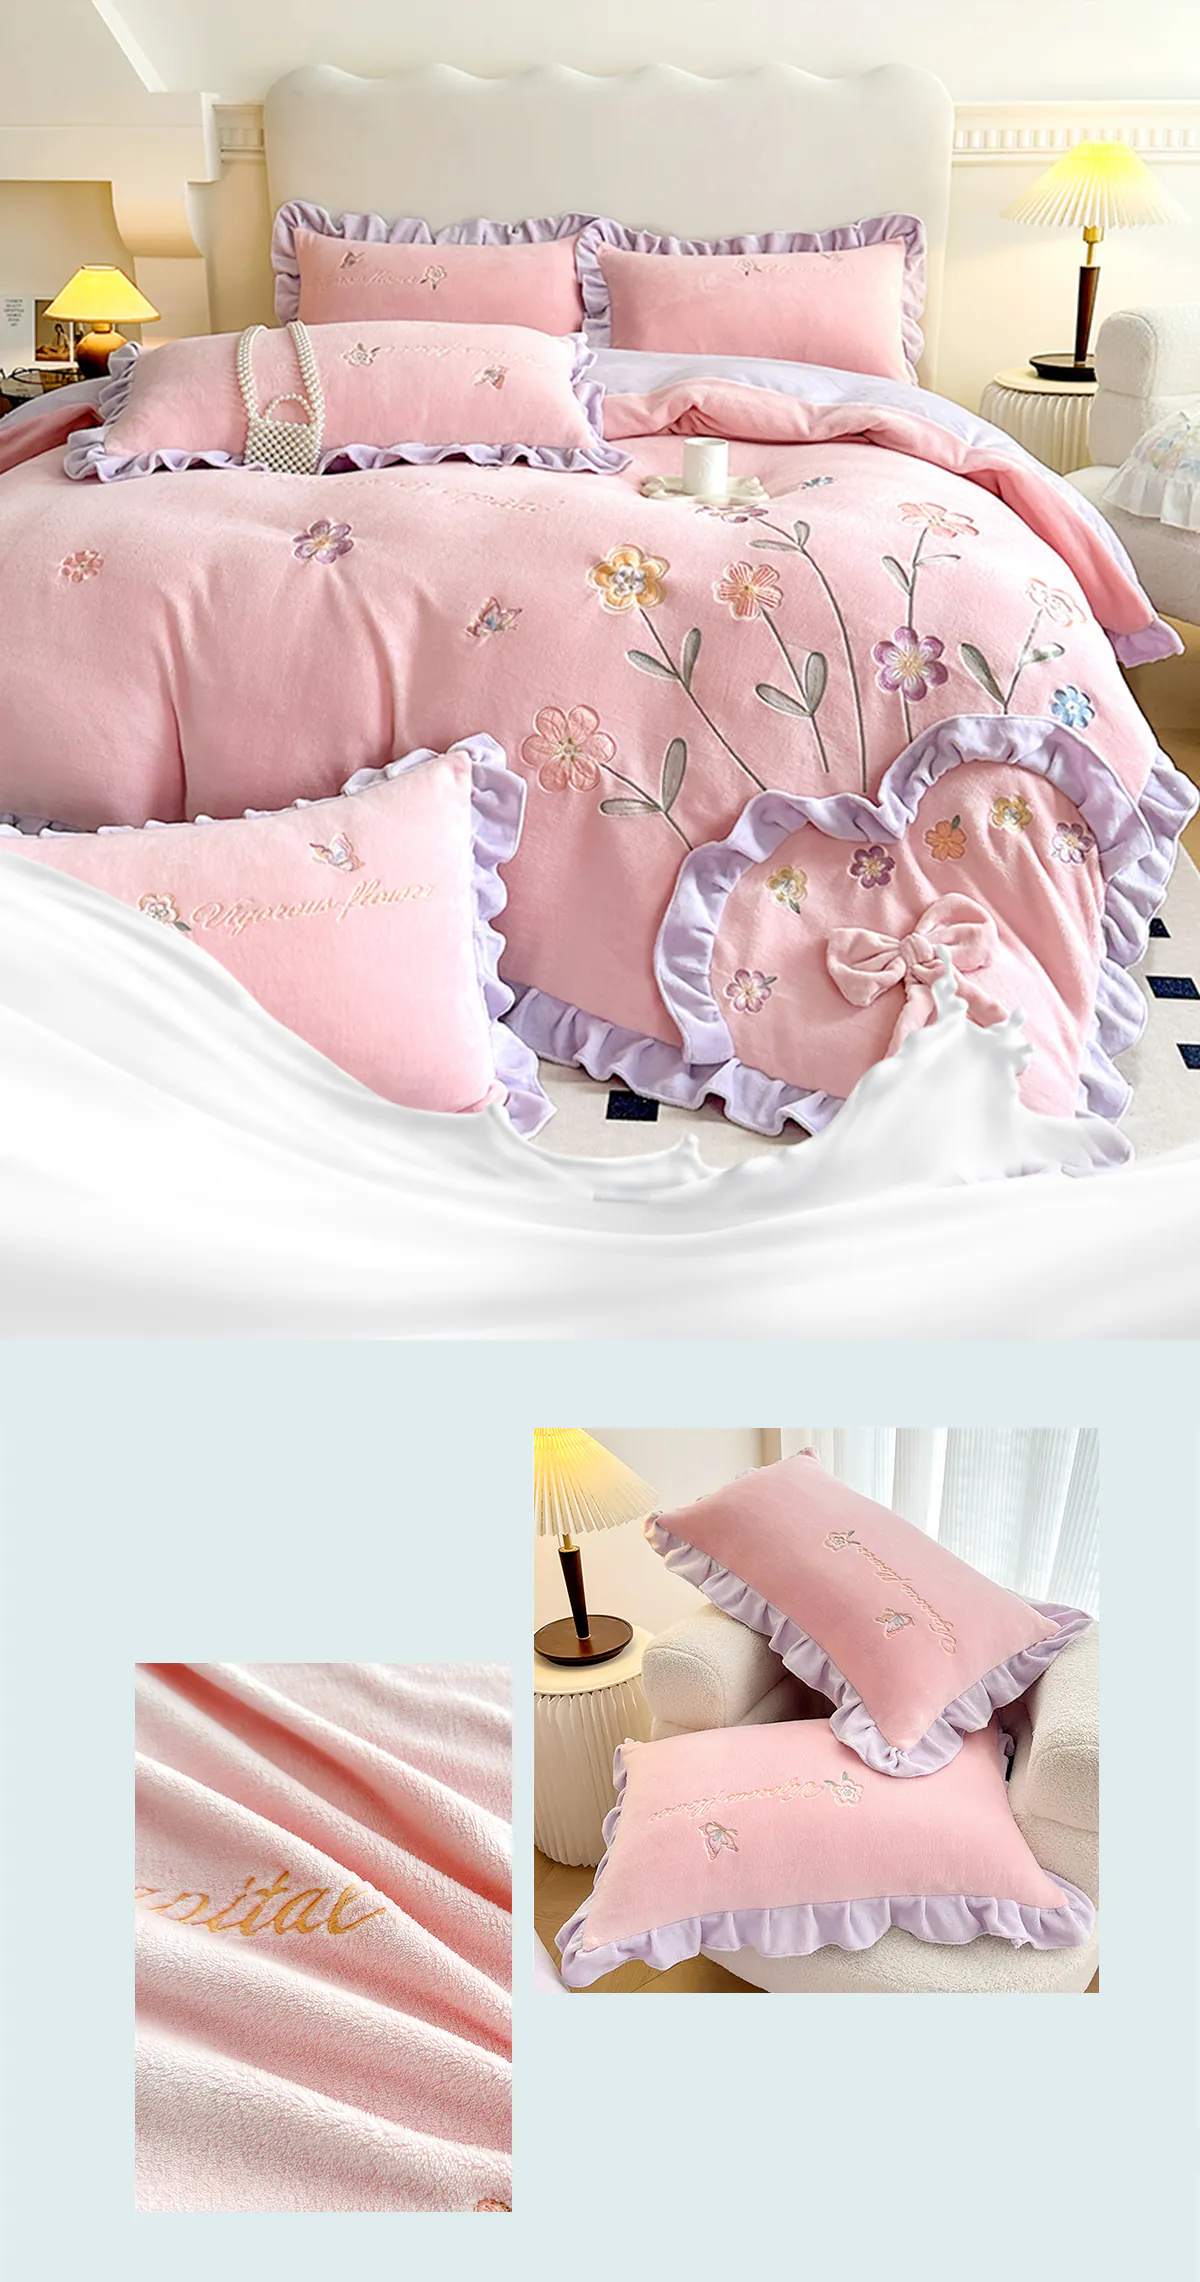 Aesthetic-Embroidery-Warm-Milk-Velvet-Duvet-Cover-Bedding-Set23